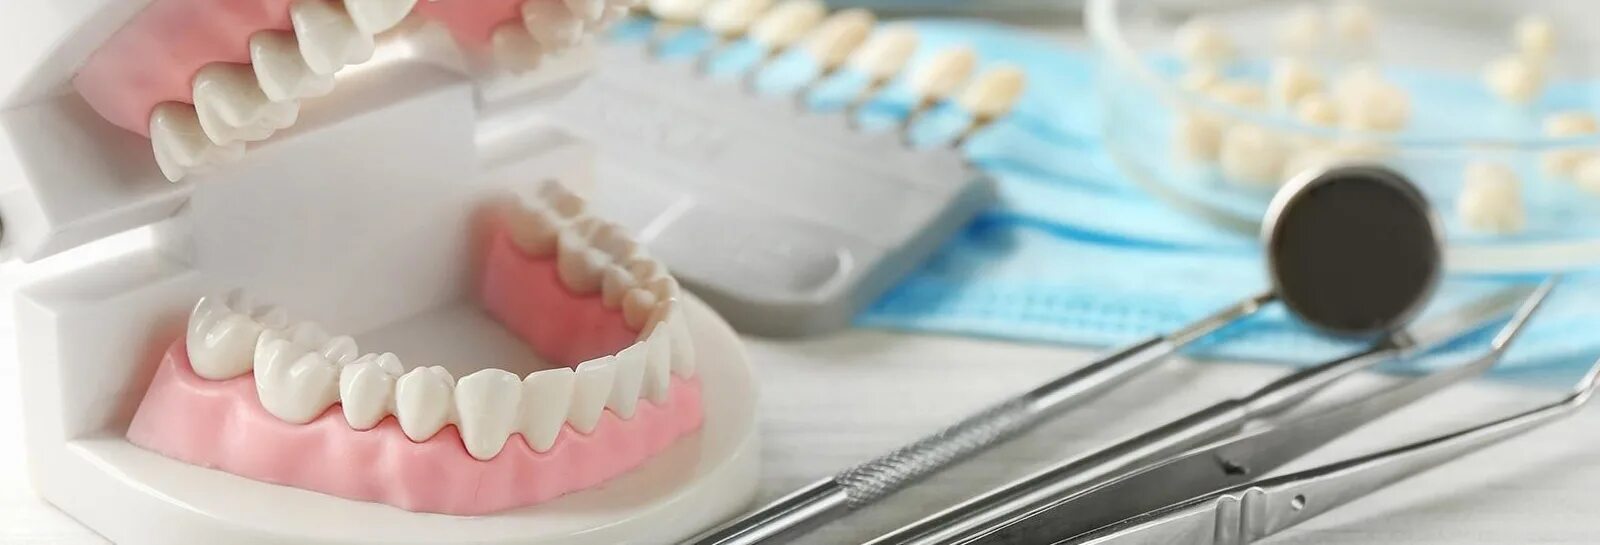 Купить материал для зубов. Таймед стоматологические материалы. Расходные материалы для стоматологии. Материалы в ортопедической стоматологии. Зубные техники.